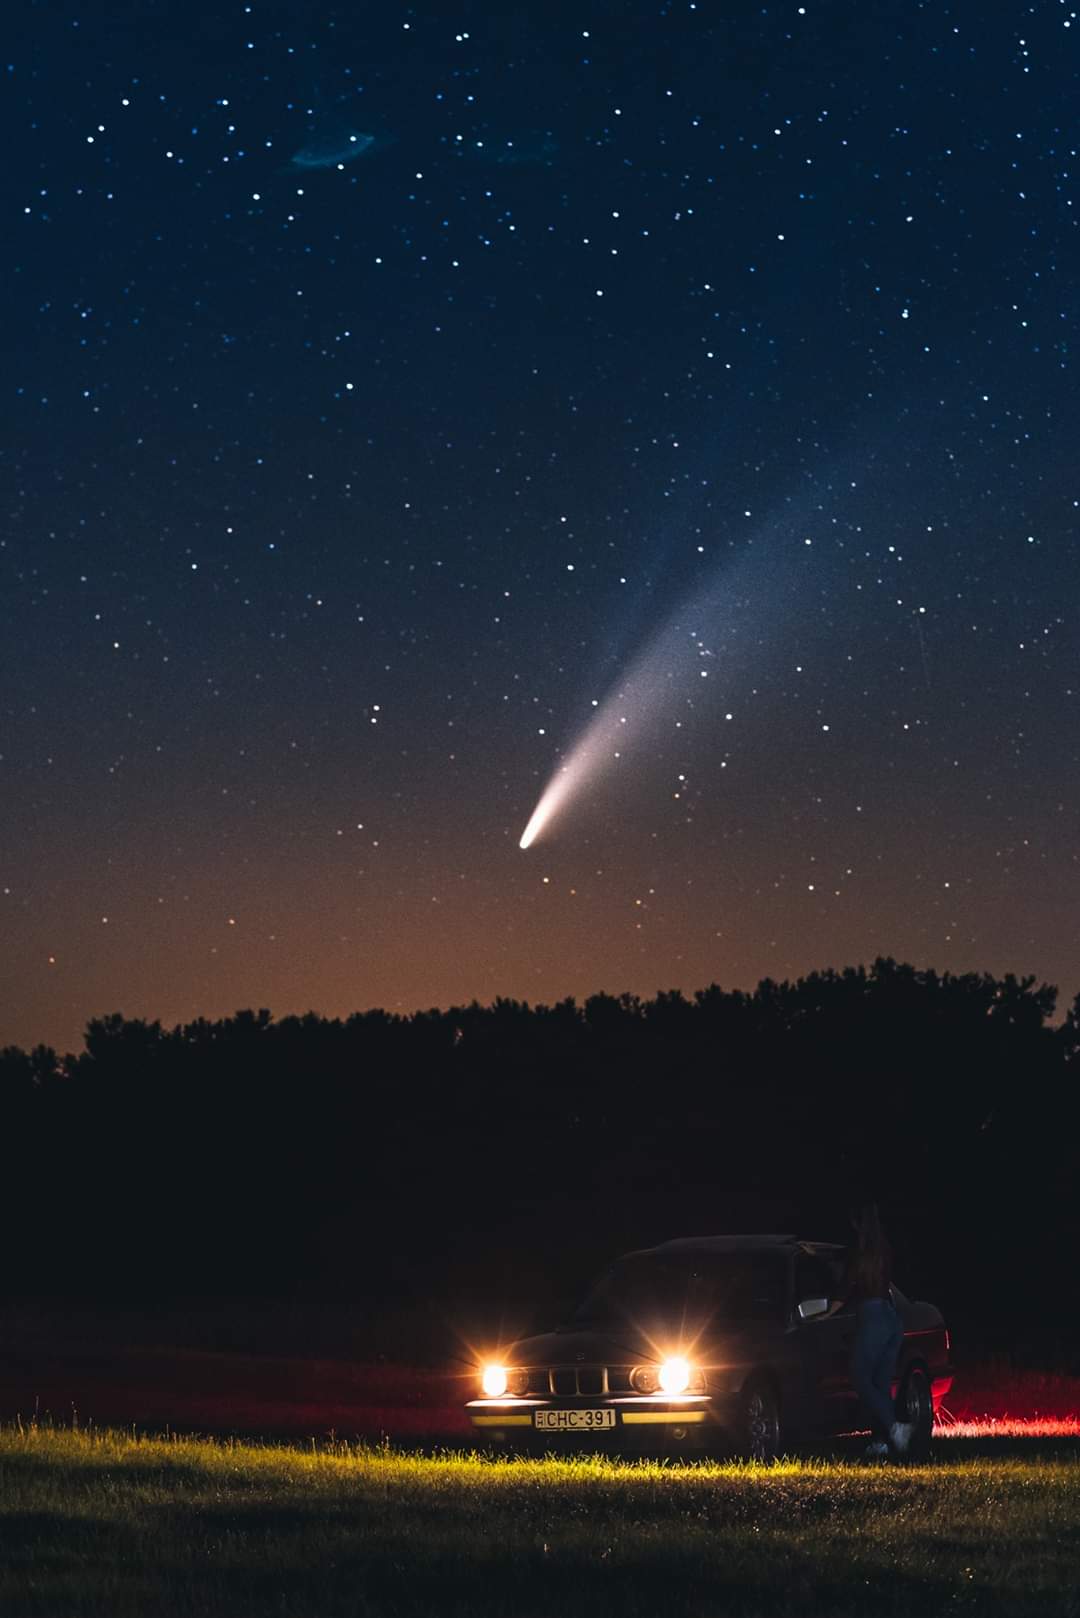 A Neowise üstökös Fodor Szabolcs fényképén